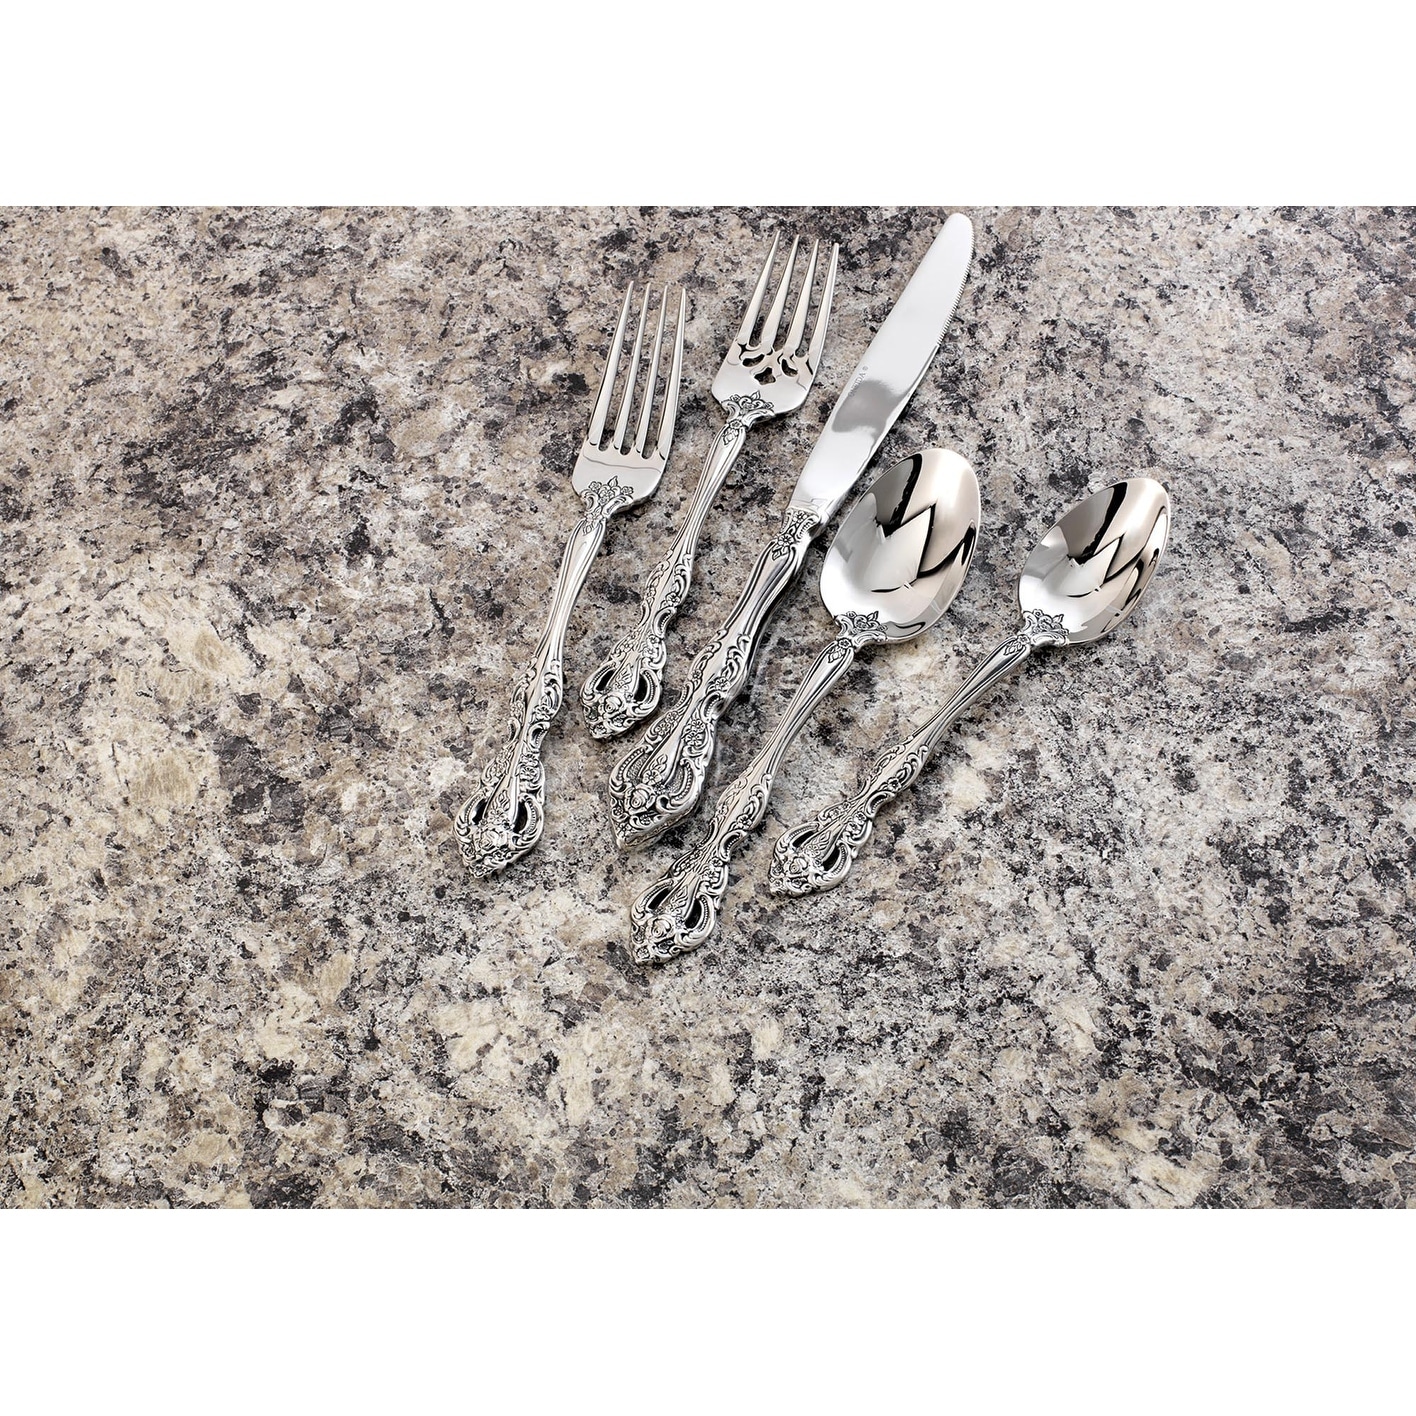 Oneida Michelangelo 18/10 Stainless Steel Dinner Forks (Set of 12)